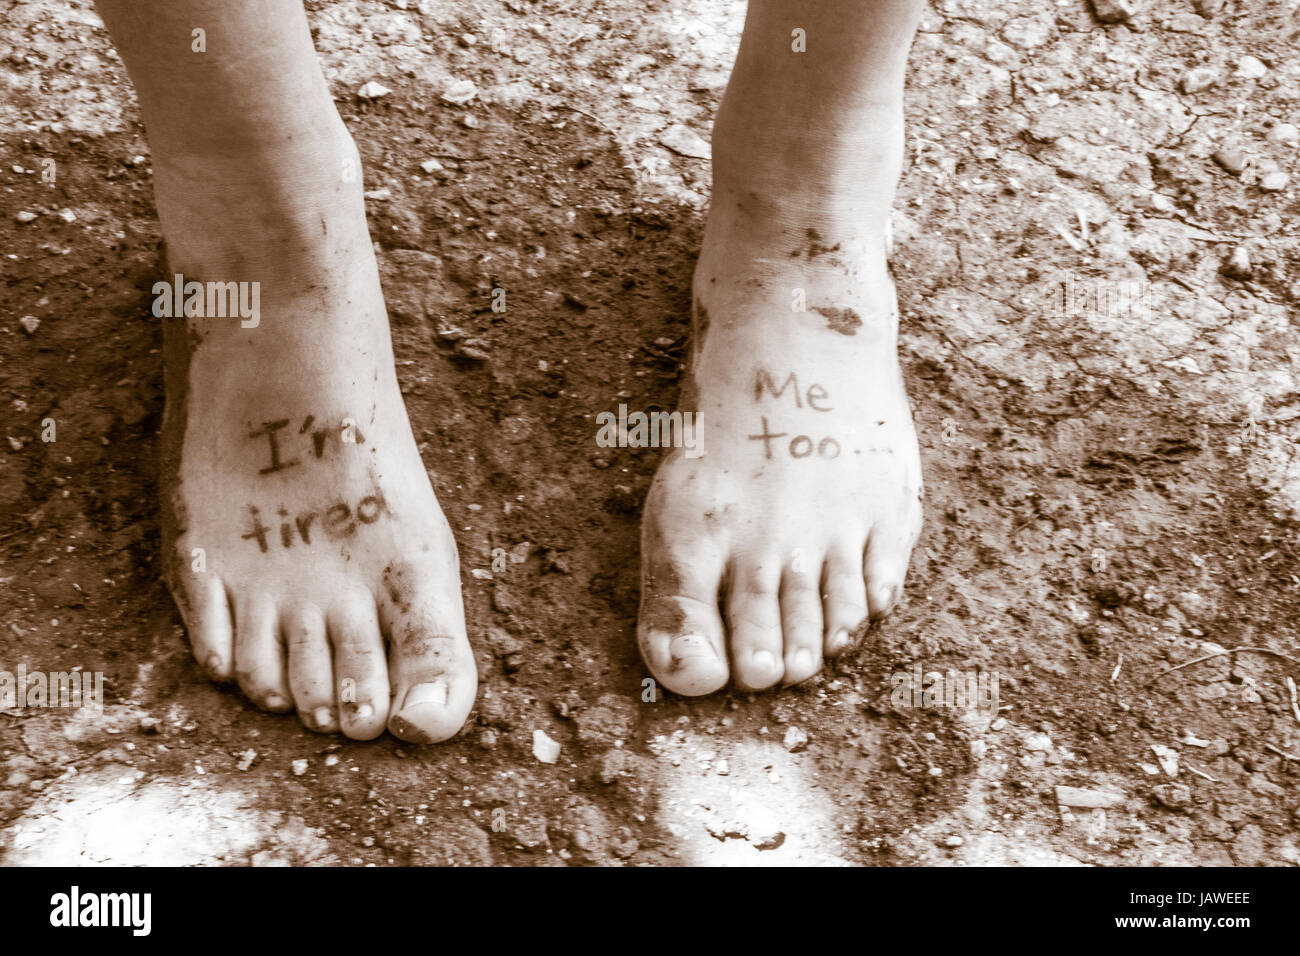 Photographie d'une paire de pieds humains et de l'expression : Im fatigué, moi aussi Banque D'Images